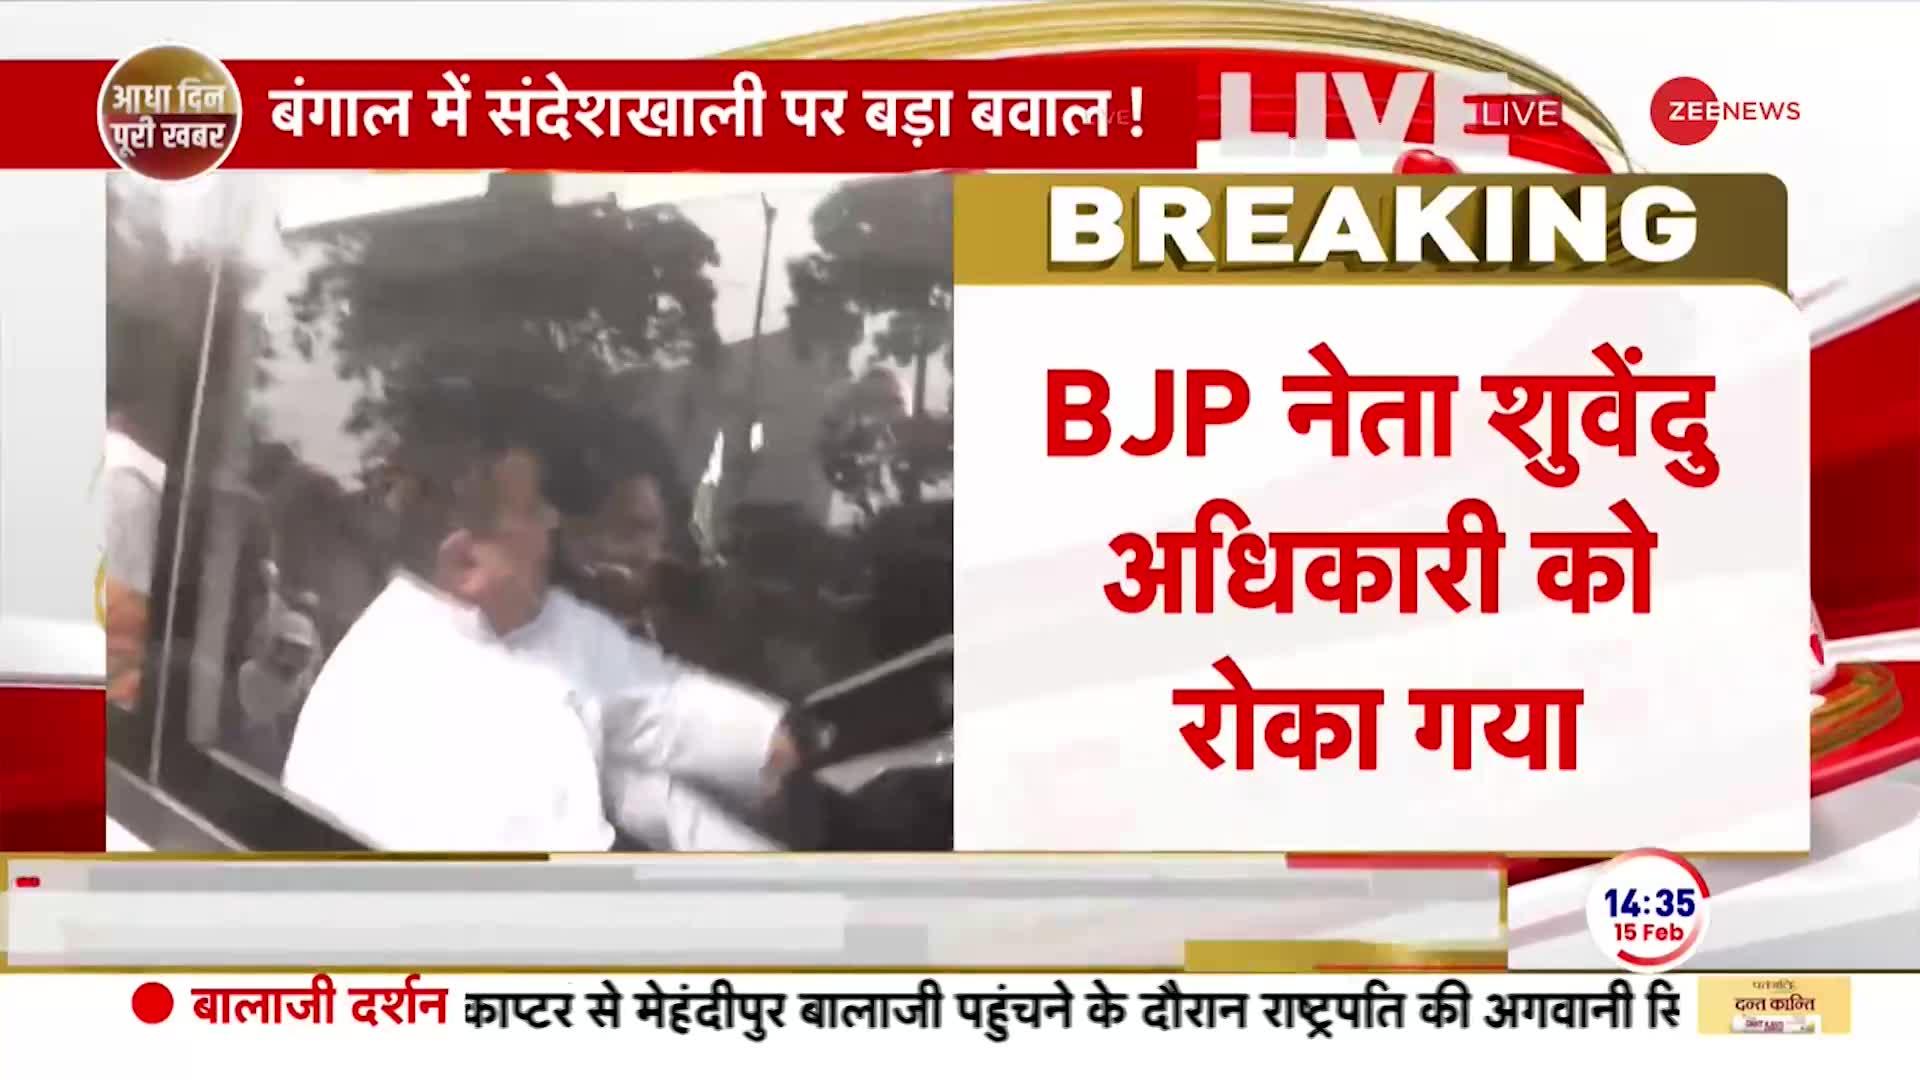 TMC Vs BJP on Sandeshkhali: बीजेपी नेता सुवेंदु अधिकारी को संदेशखाली जाने से पुलिस ने रोका